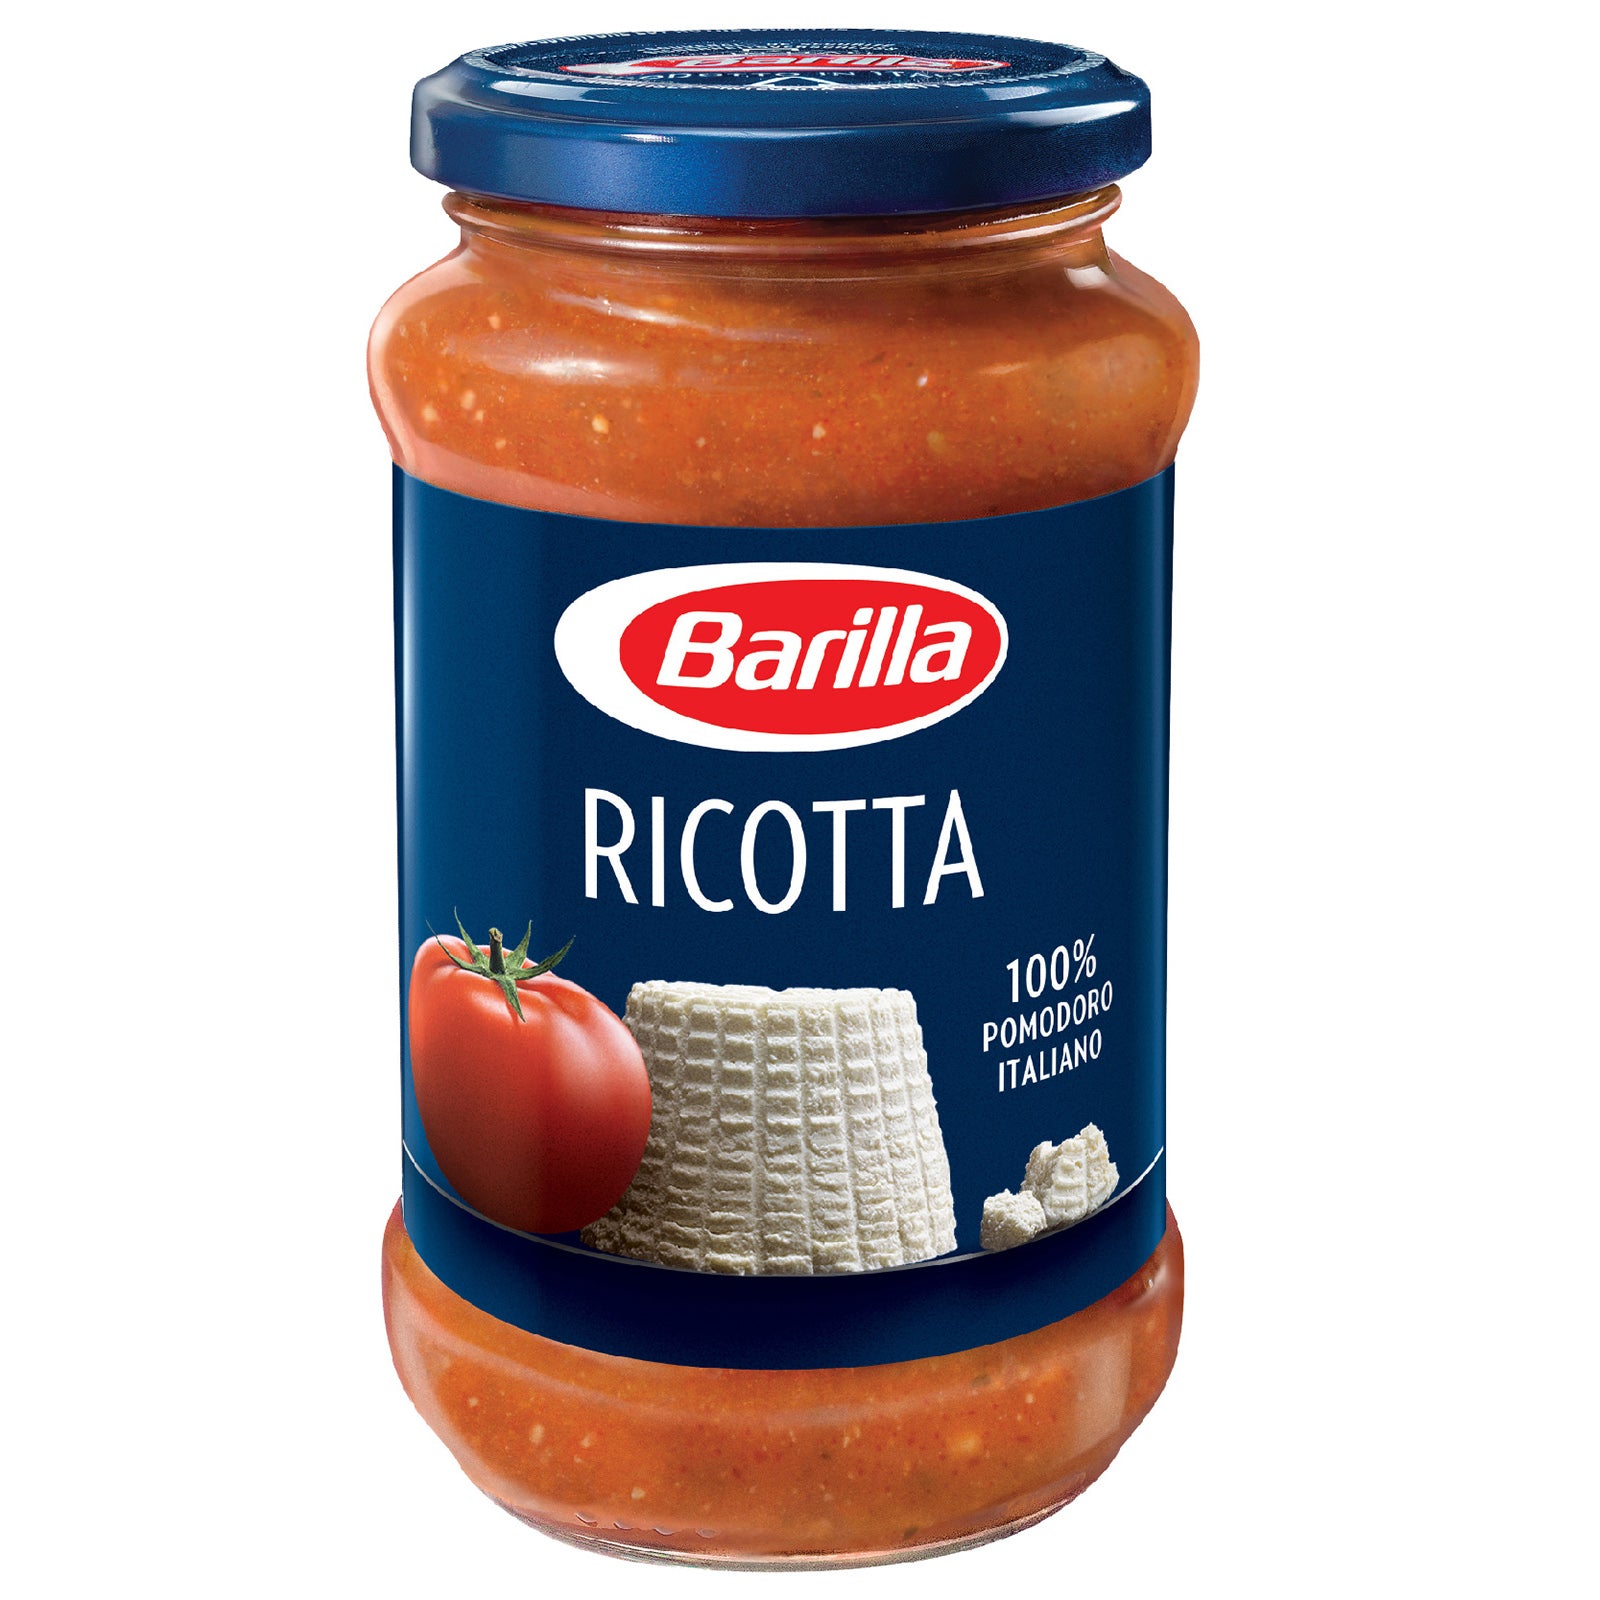 Tomato Sauce Ricotta with Cuisine - 400g Barilla Click Italian Pasta